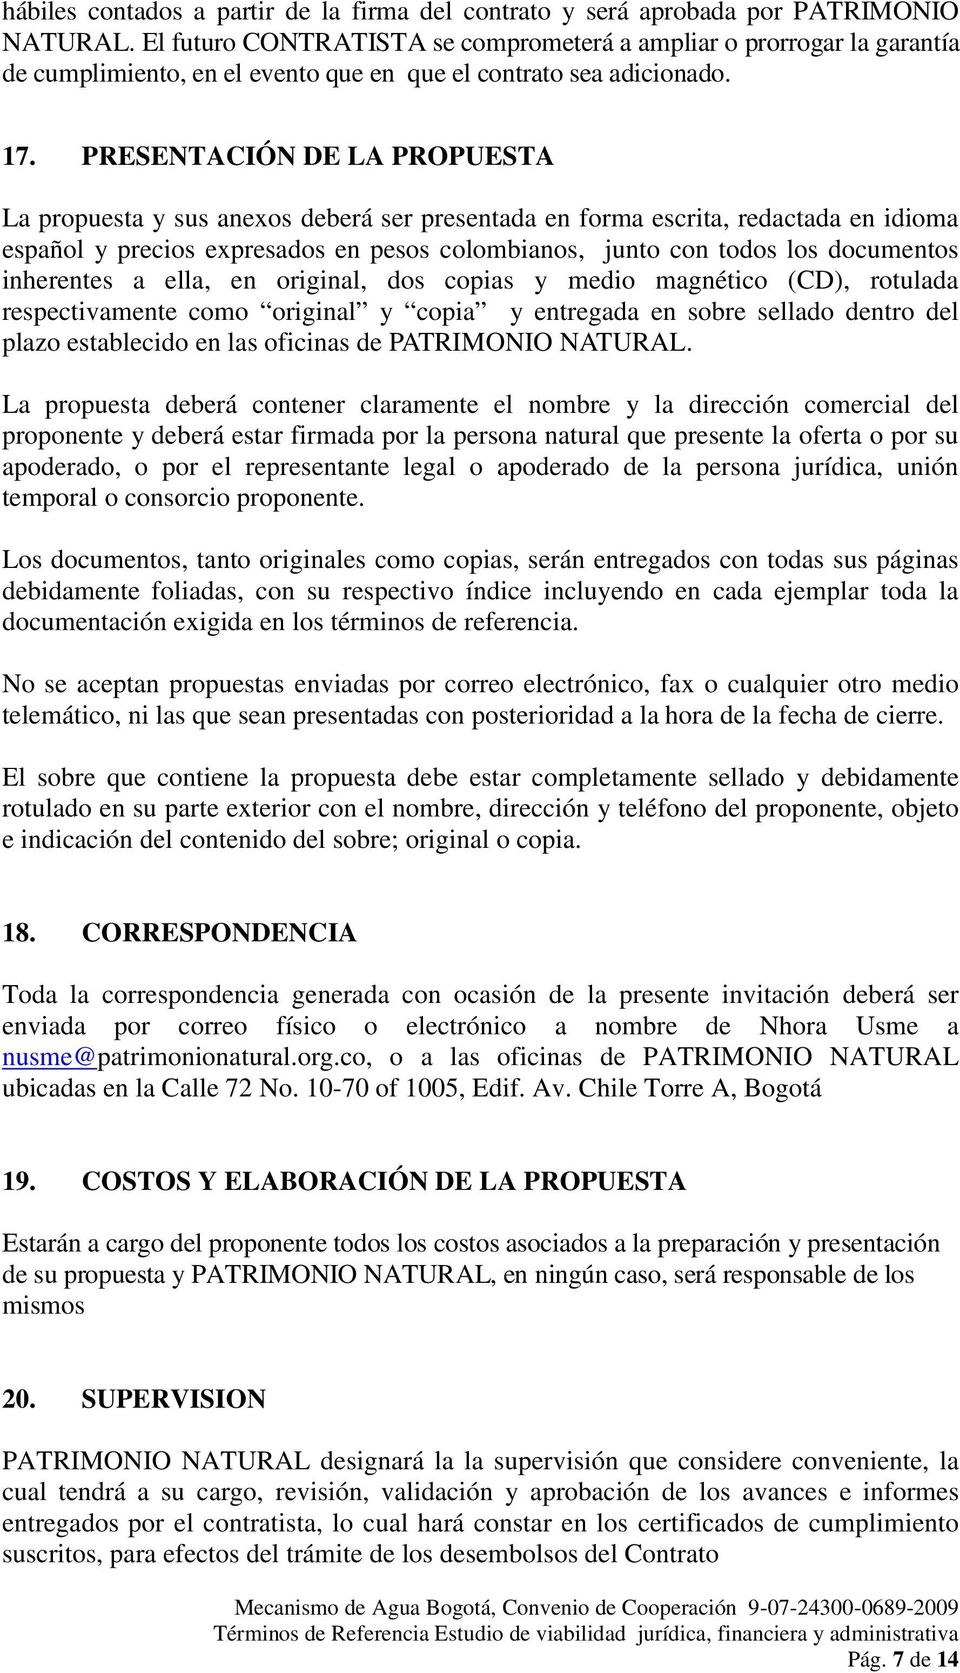 PRESENTACIÓN DE LA PROPUESTA La propuesta y sus anexos deberá ser presentada en forma escrita, redactada en idioma español y precios expresados en pesos colombianos, junto con todos los documentos